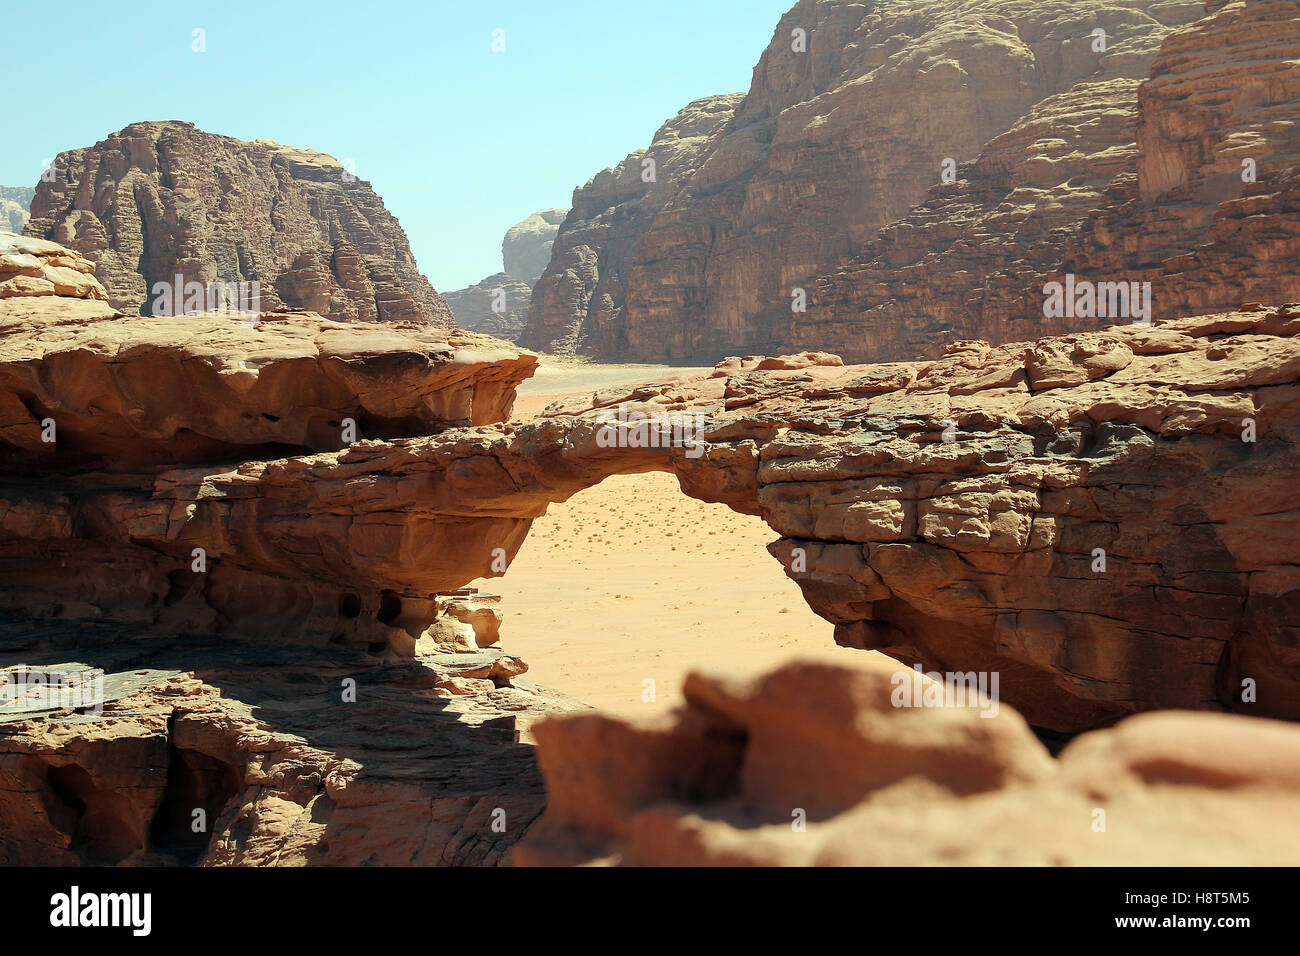 Valle de Wadi Rum, Puente del desierto, desierto de Jordania Foto de stock